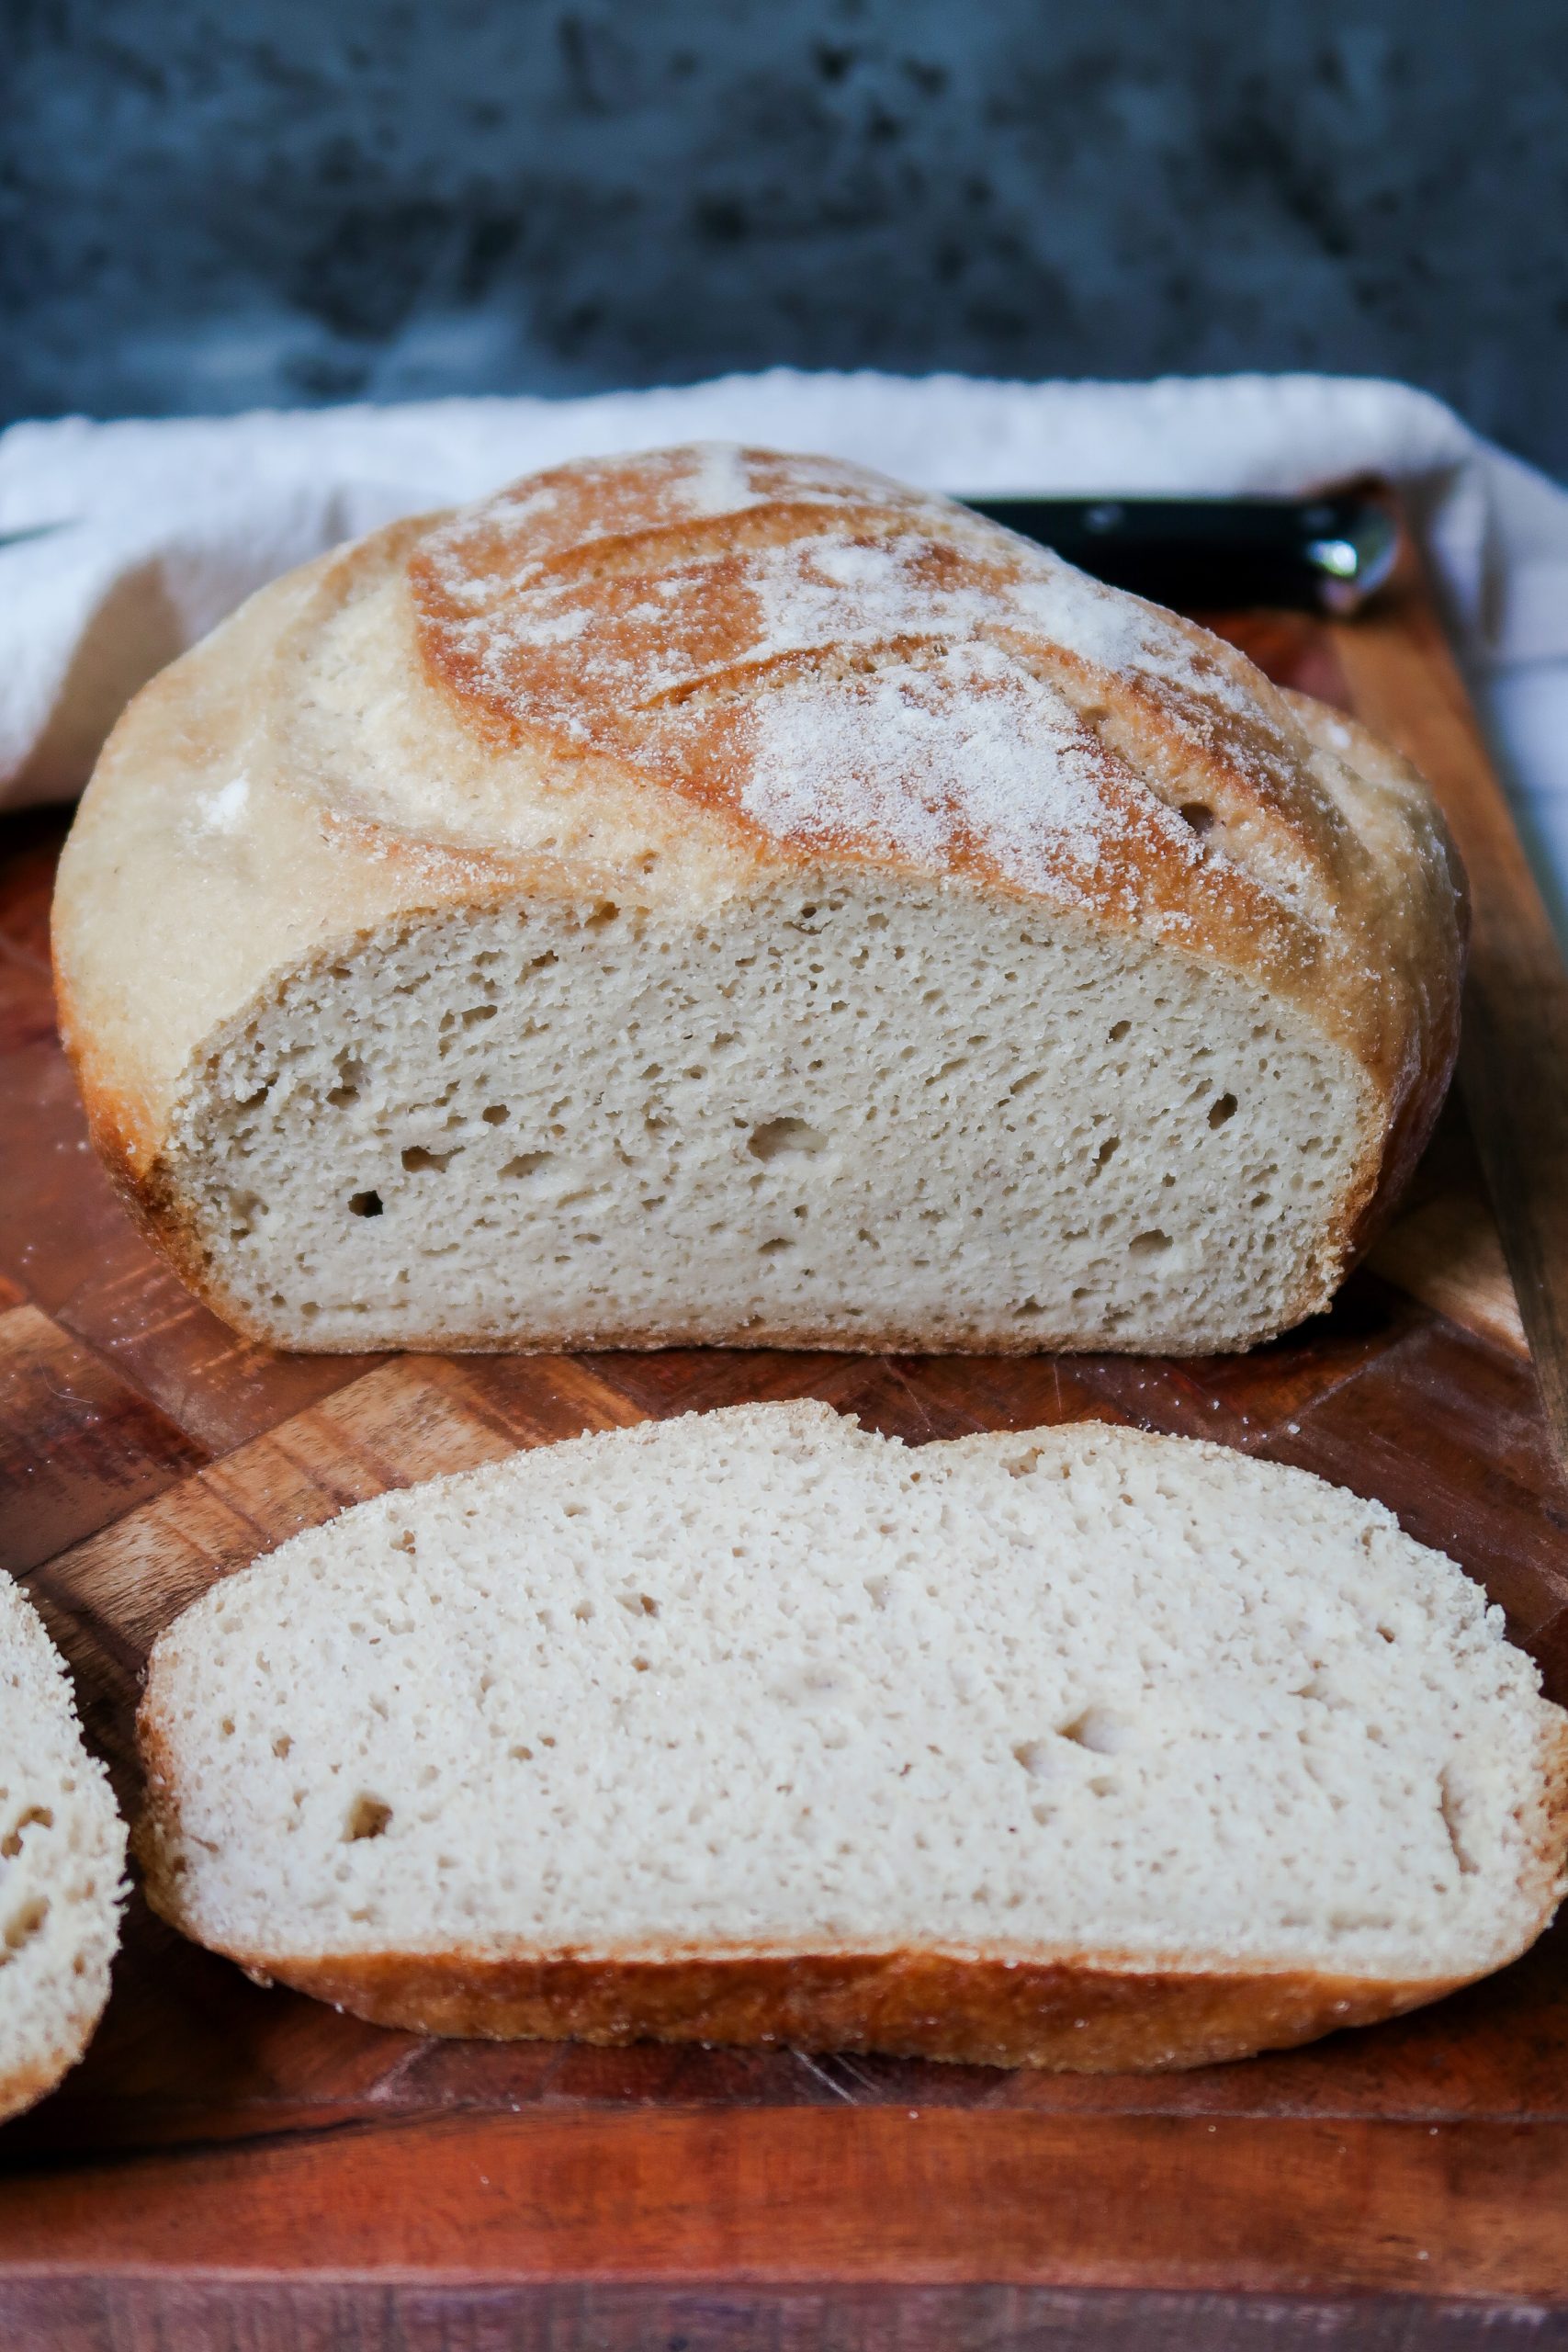 Gluten Free Sourdough Bread Recipe